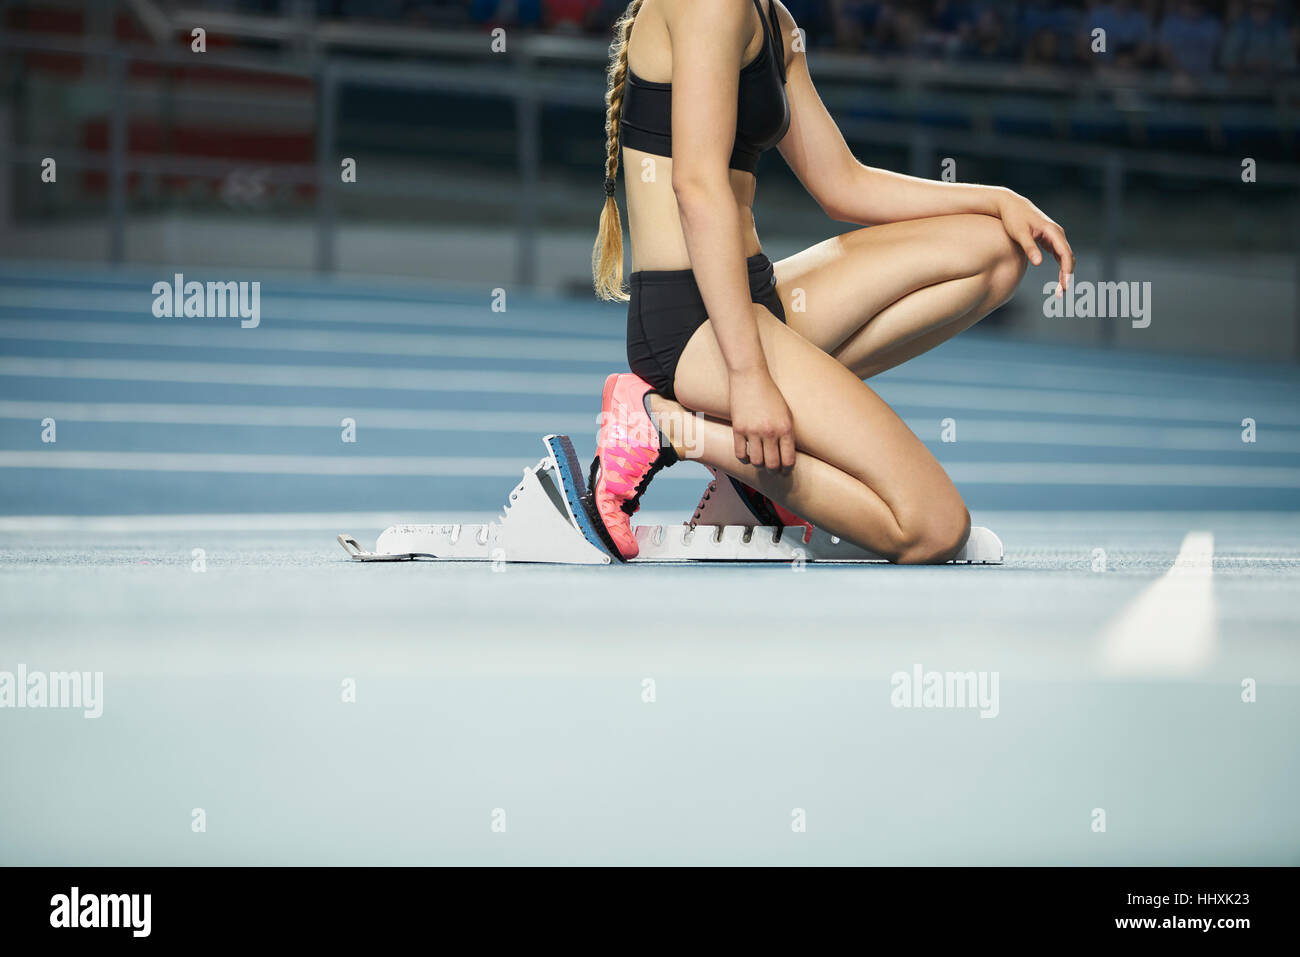 Weibliche Läufer kniet am Startblock am Sportplatz Stockfoto